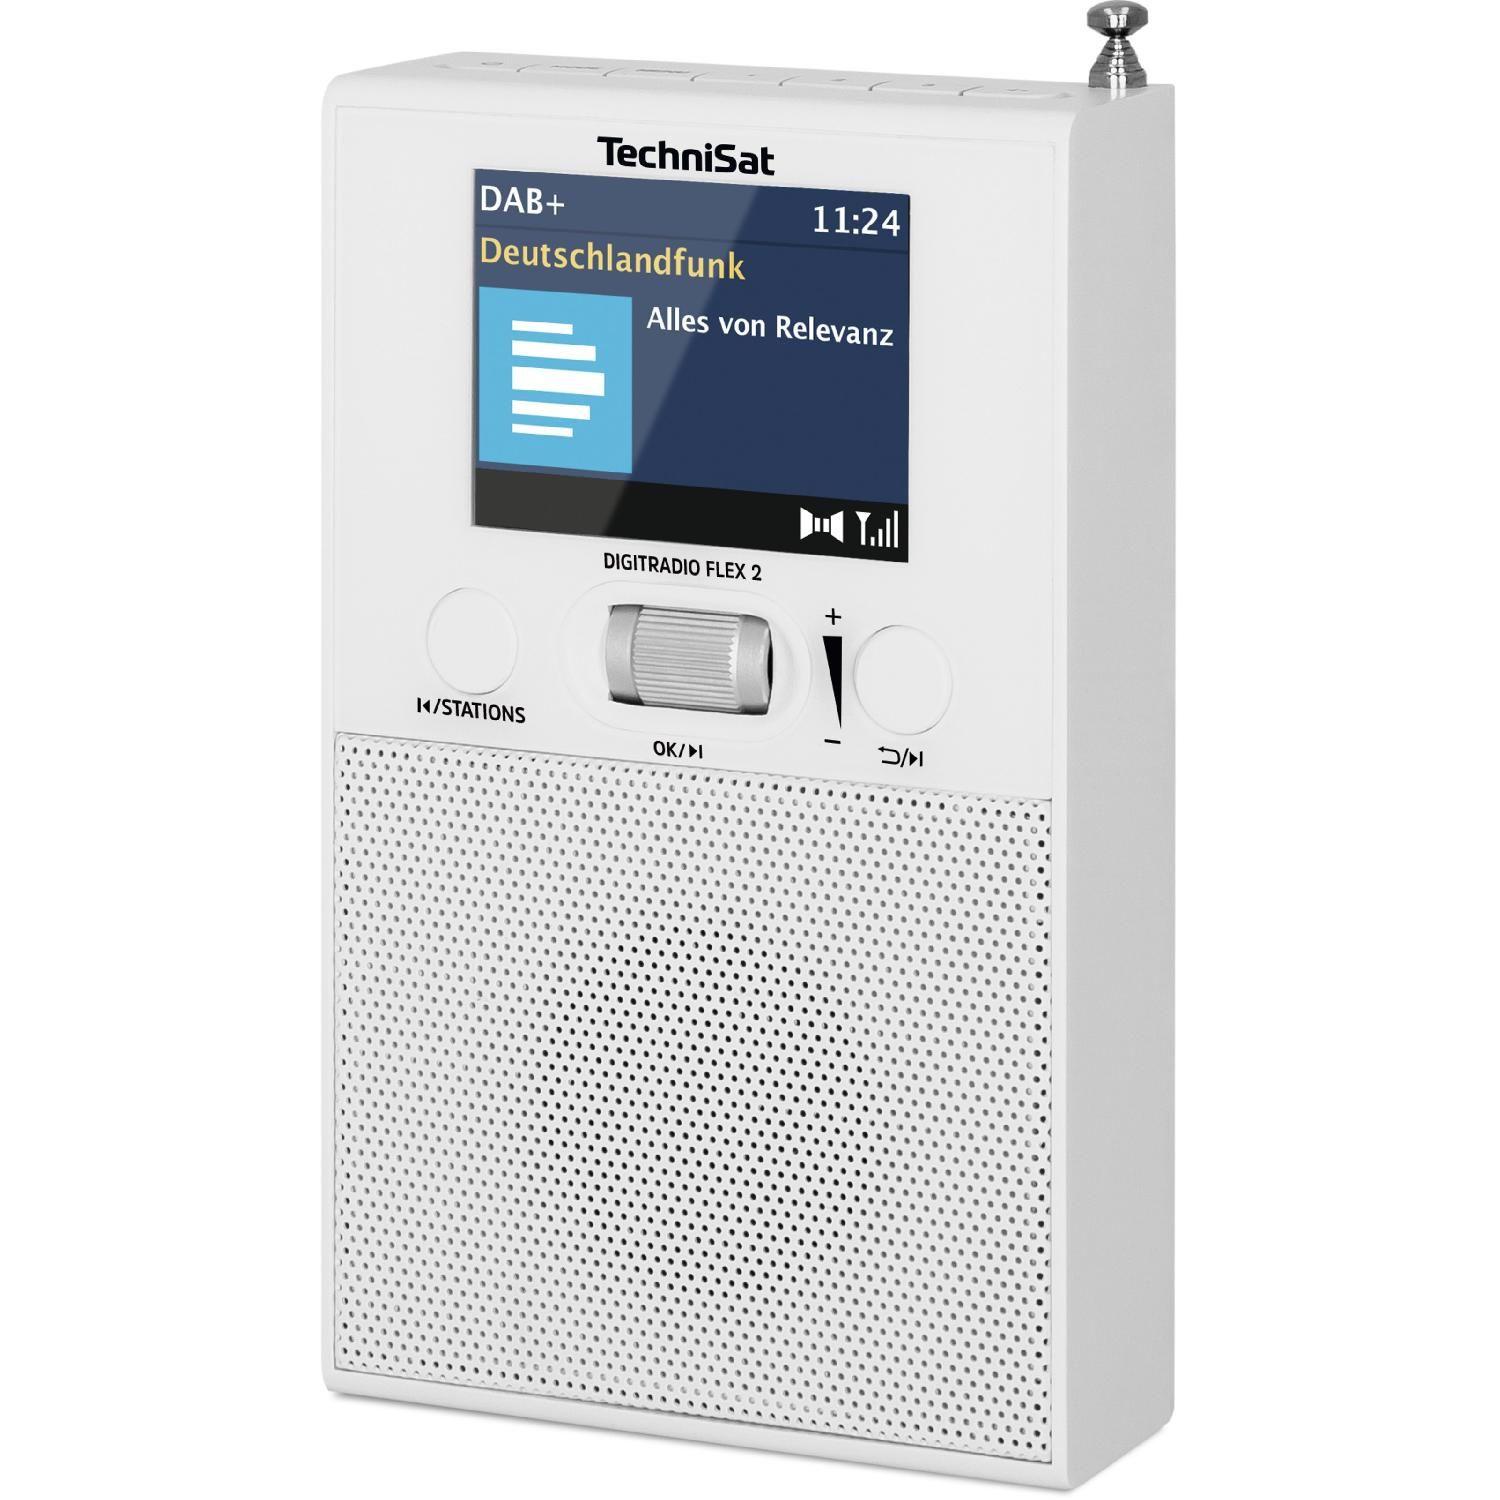 weiß 2 portables DAB+/UKW FM, Digitalradio, DAB+ UKW-Radio, FLEX Radio, DIGITRADIO DAB, AM, DAB+, TECHNISAT Bluetooth,